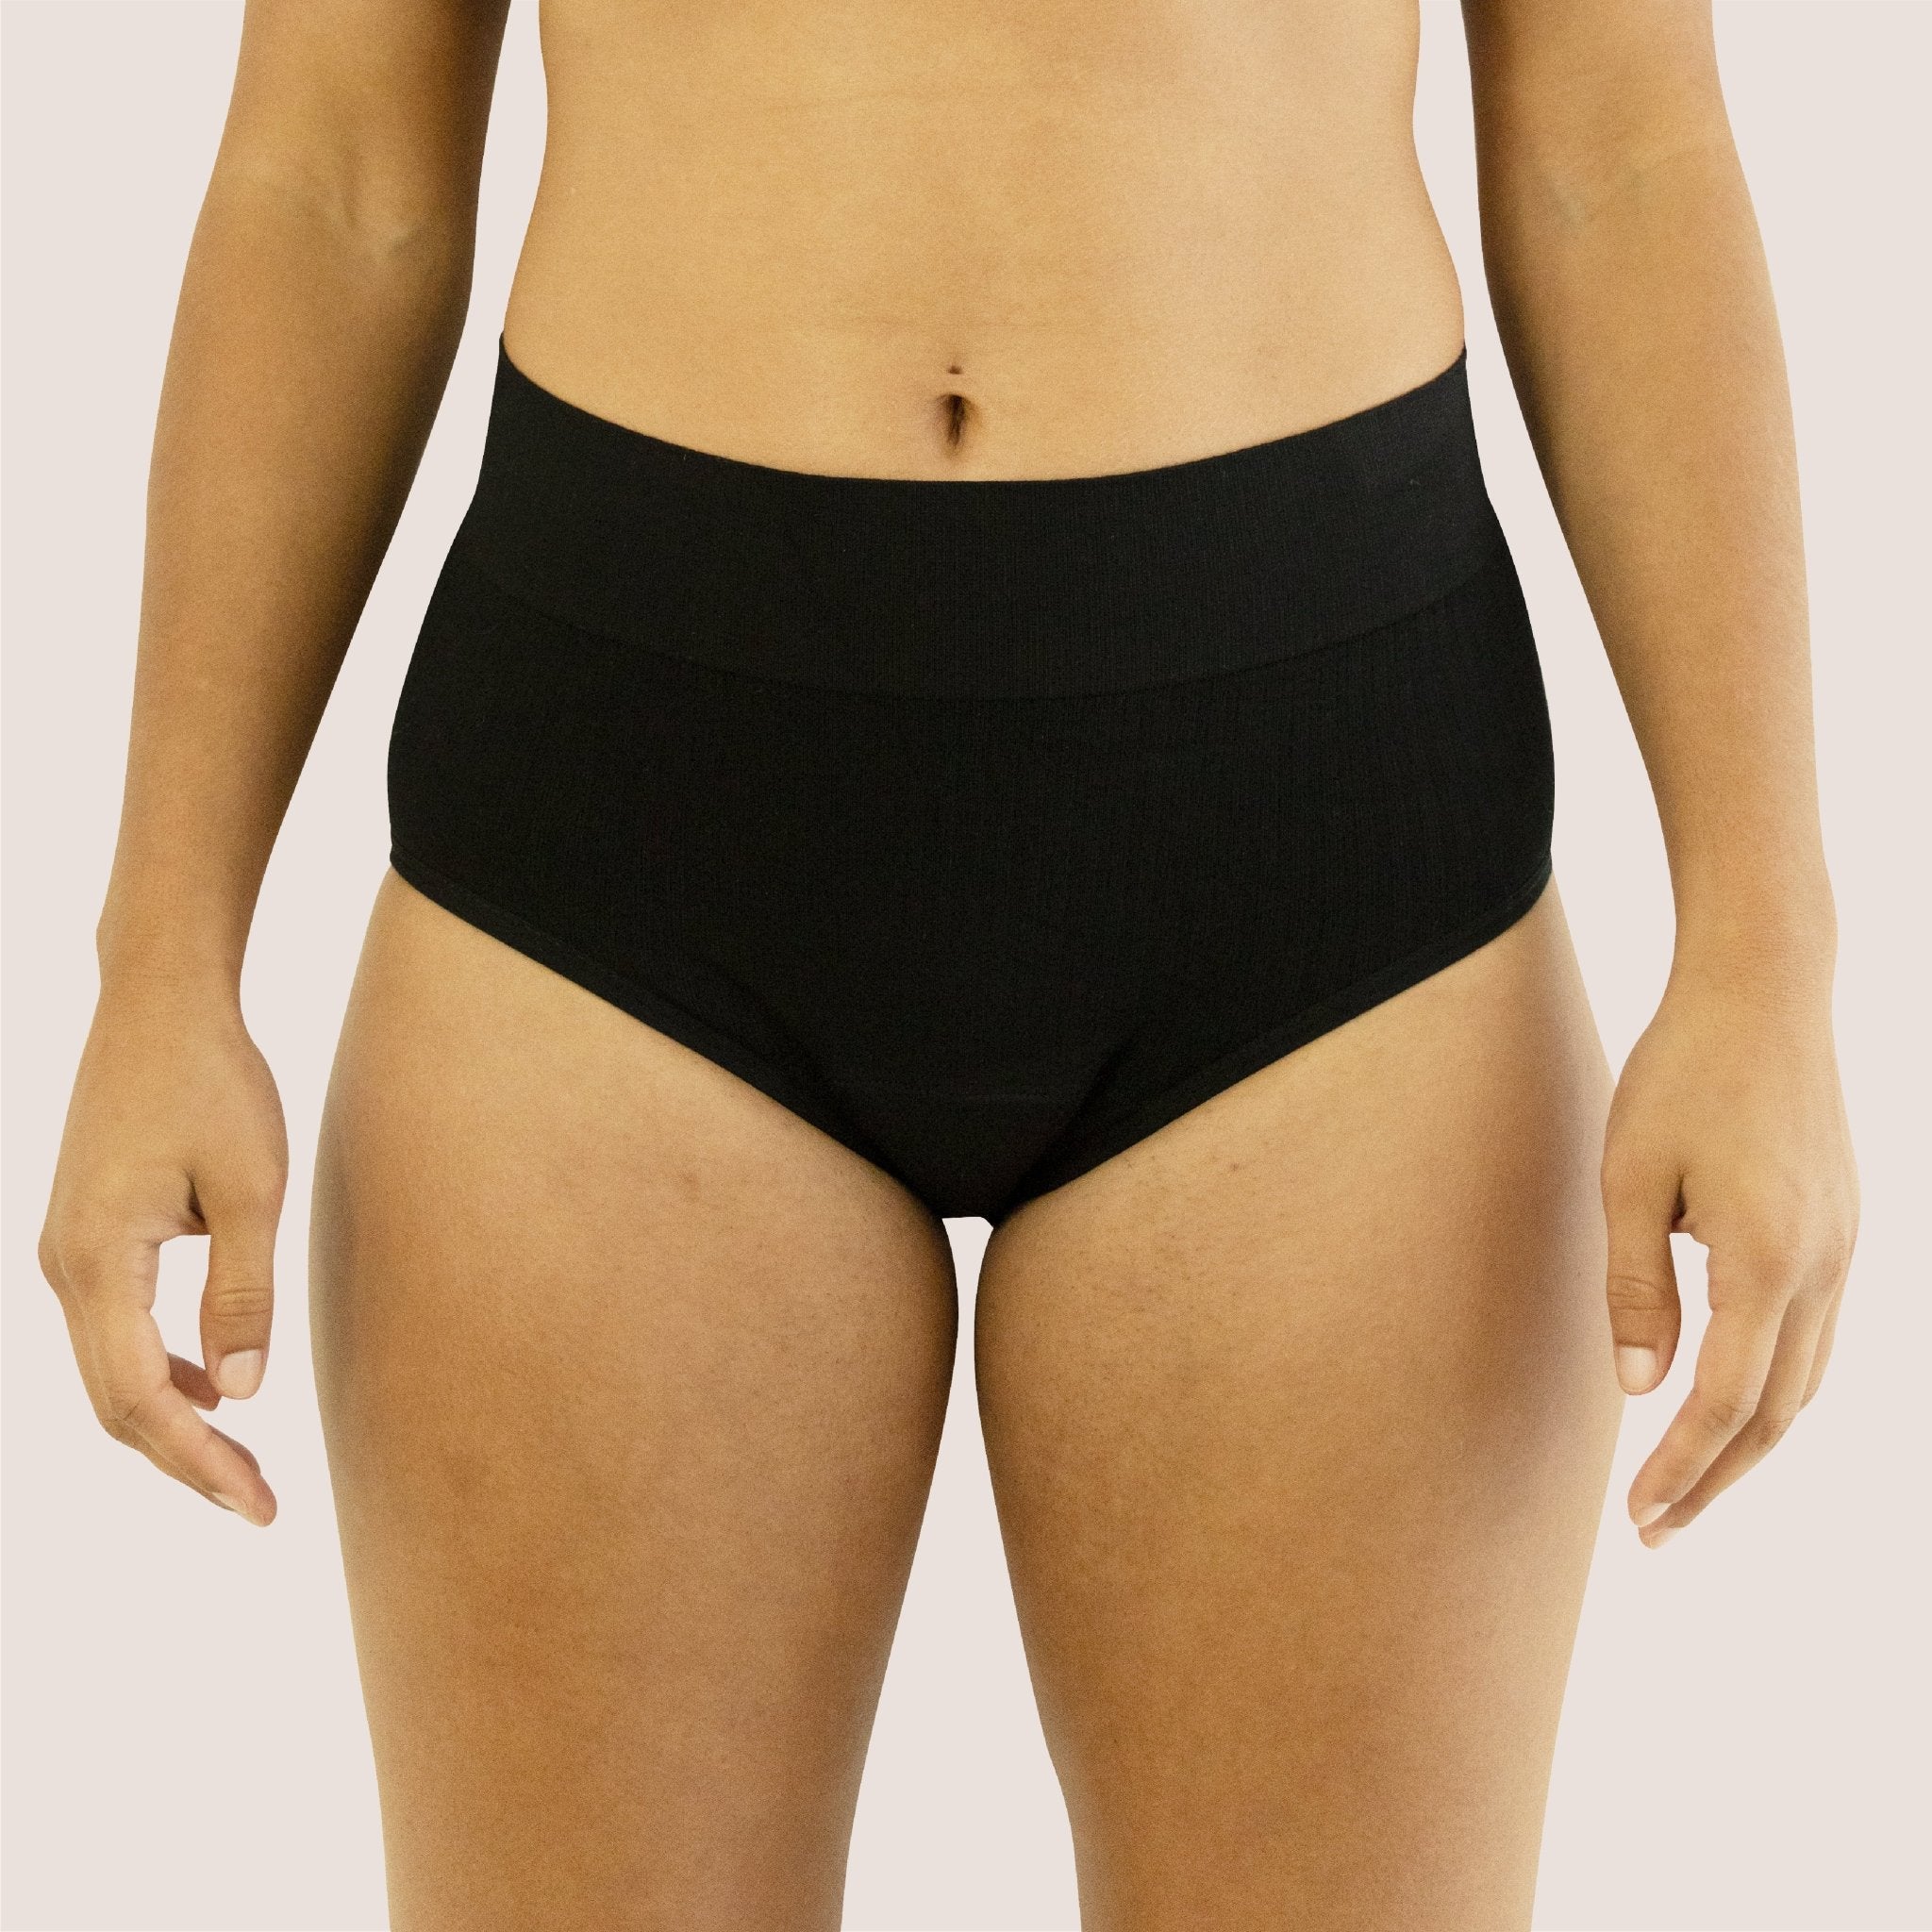 Wholesale Super Absorbency High-Waist Brief Period Underwear for